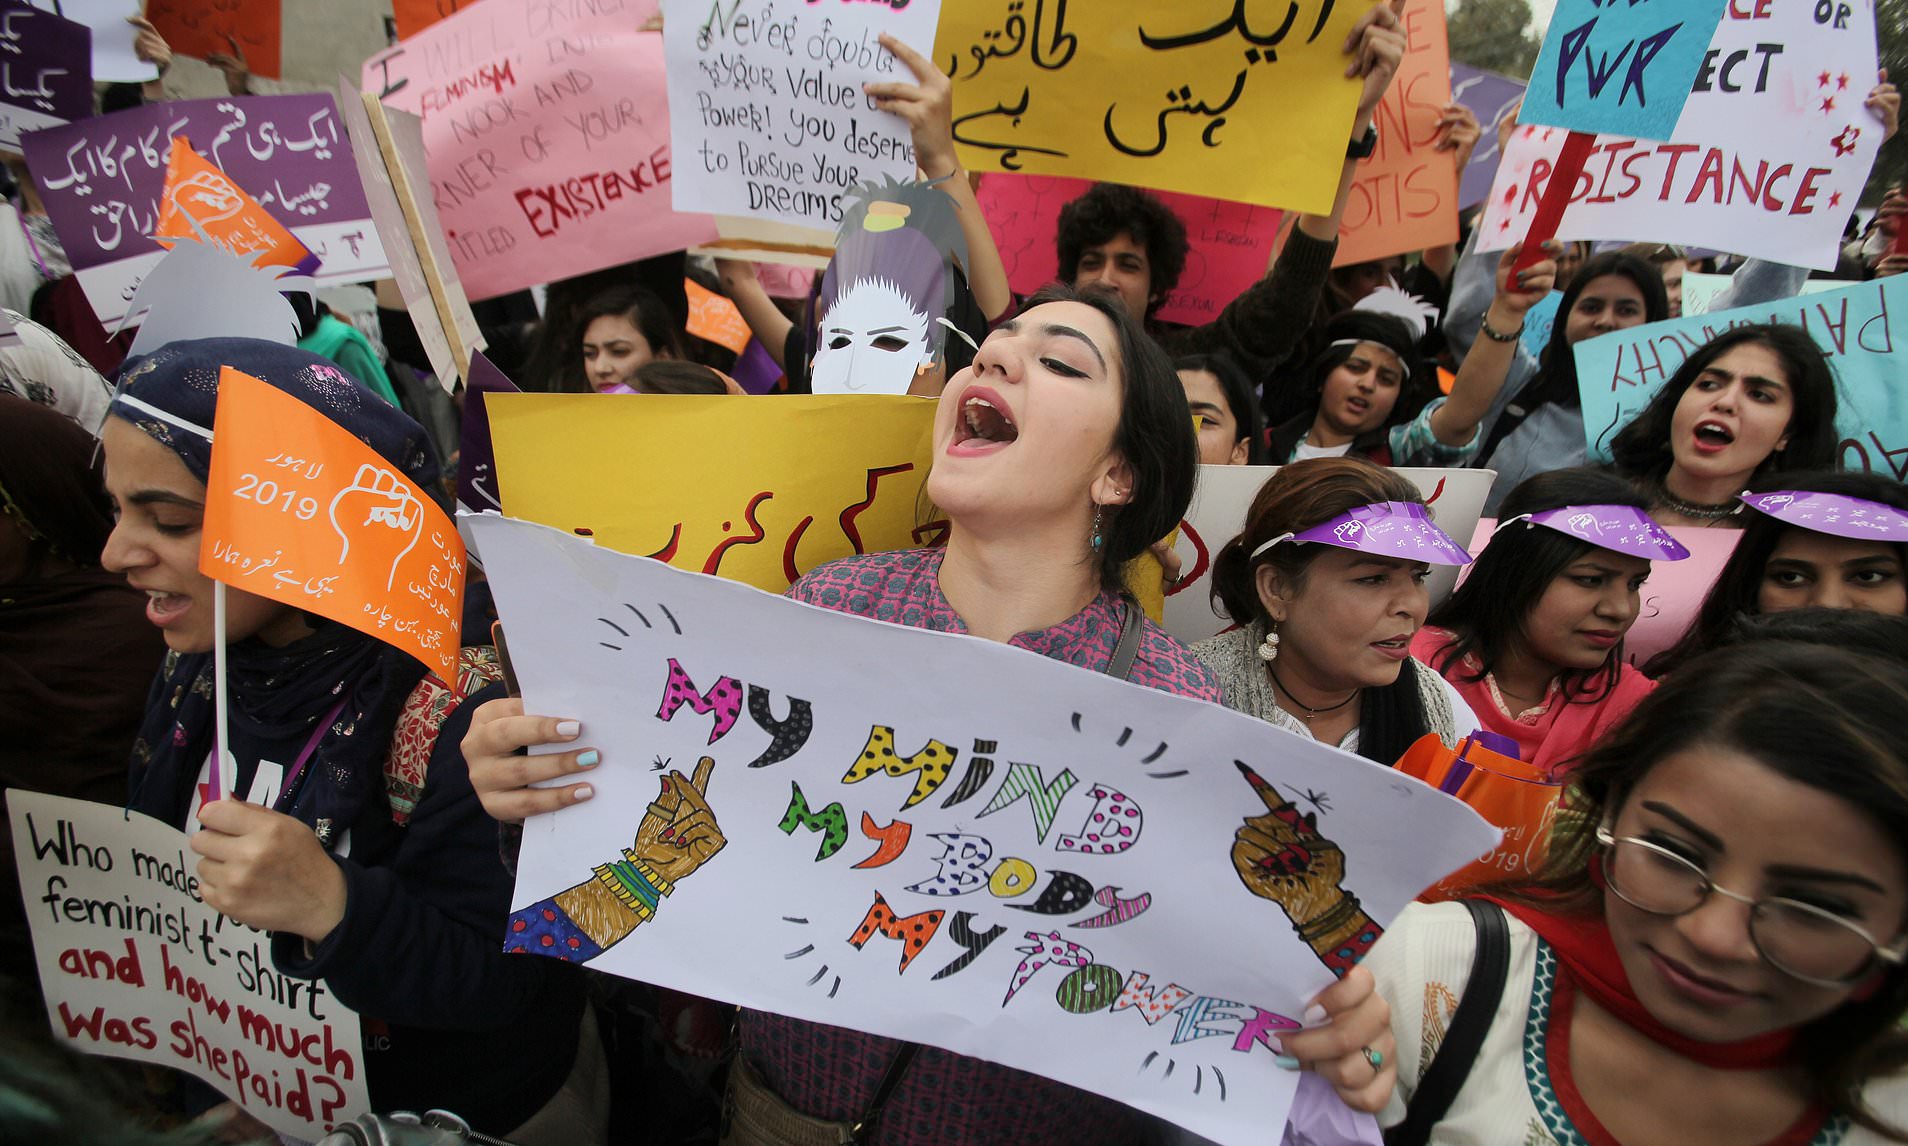 feminism in pakistan essay css